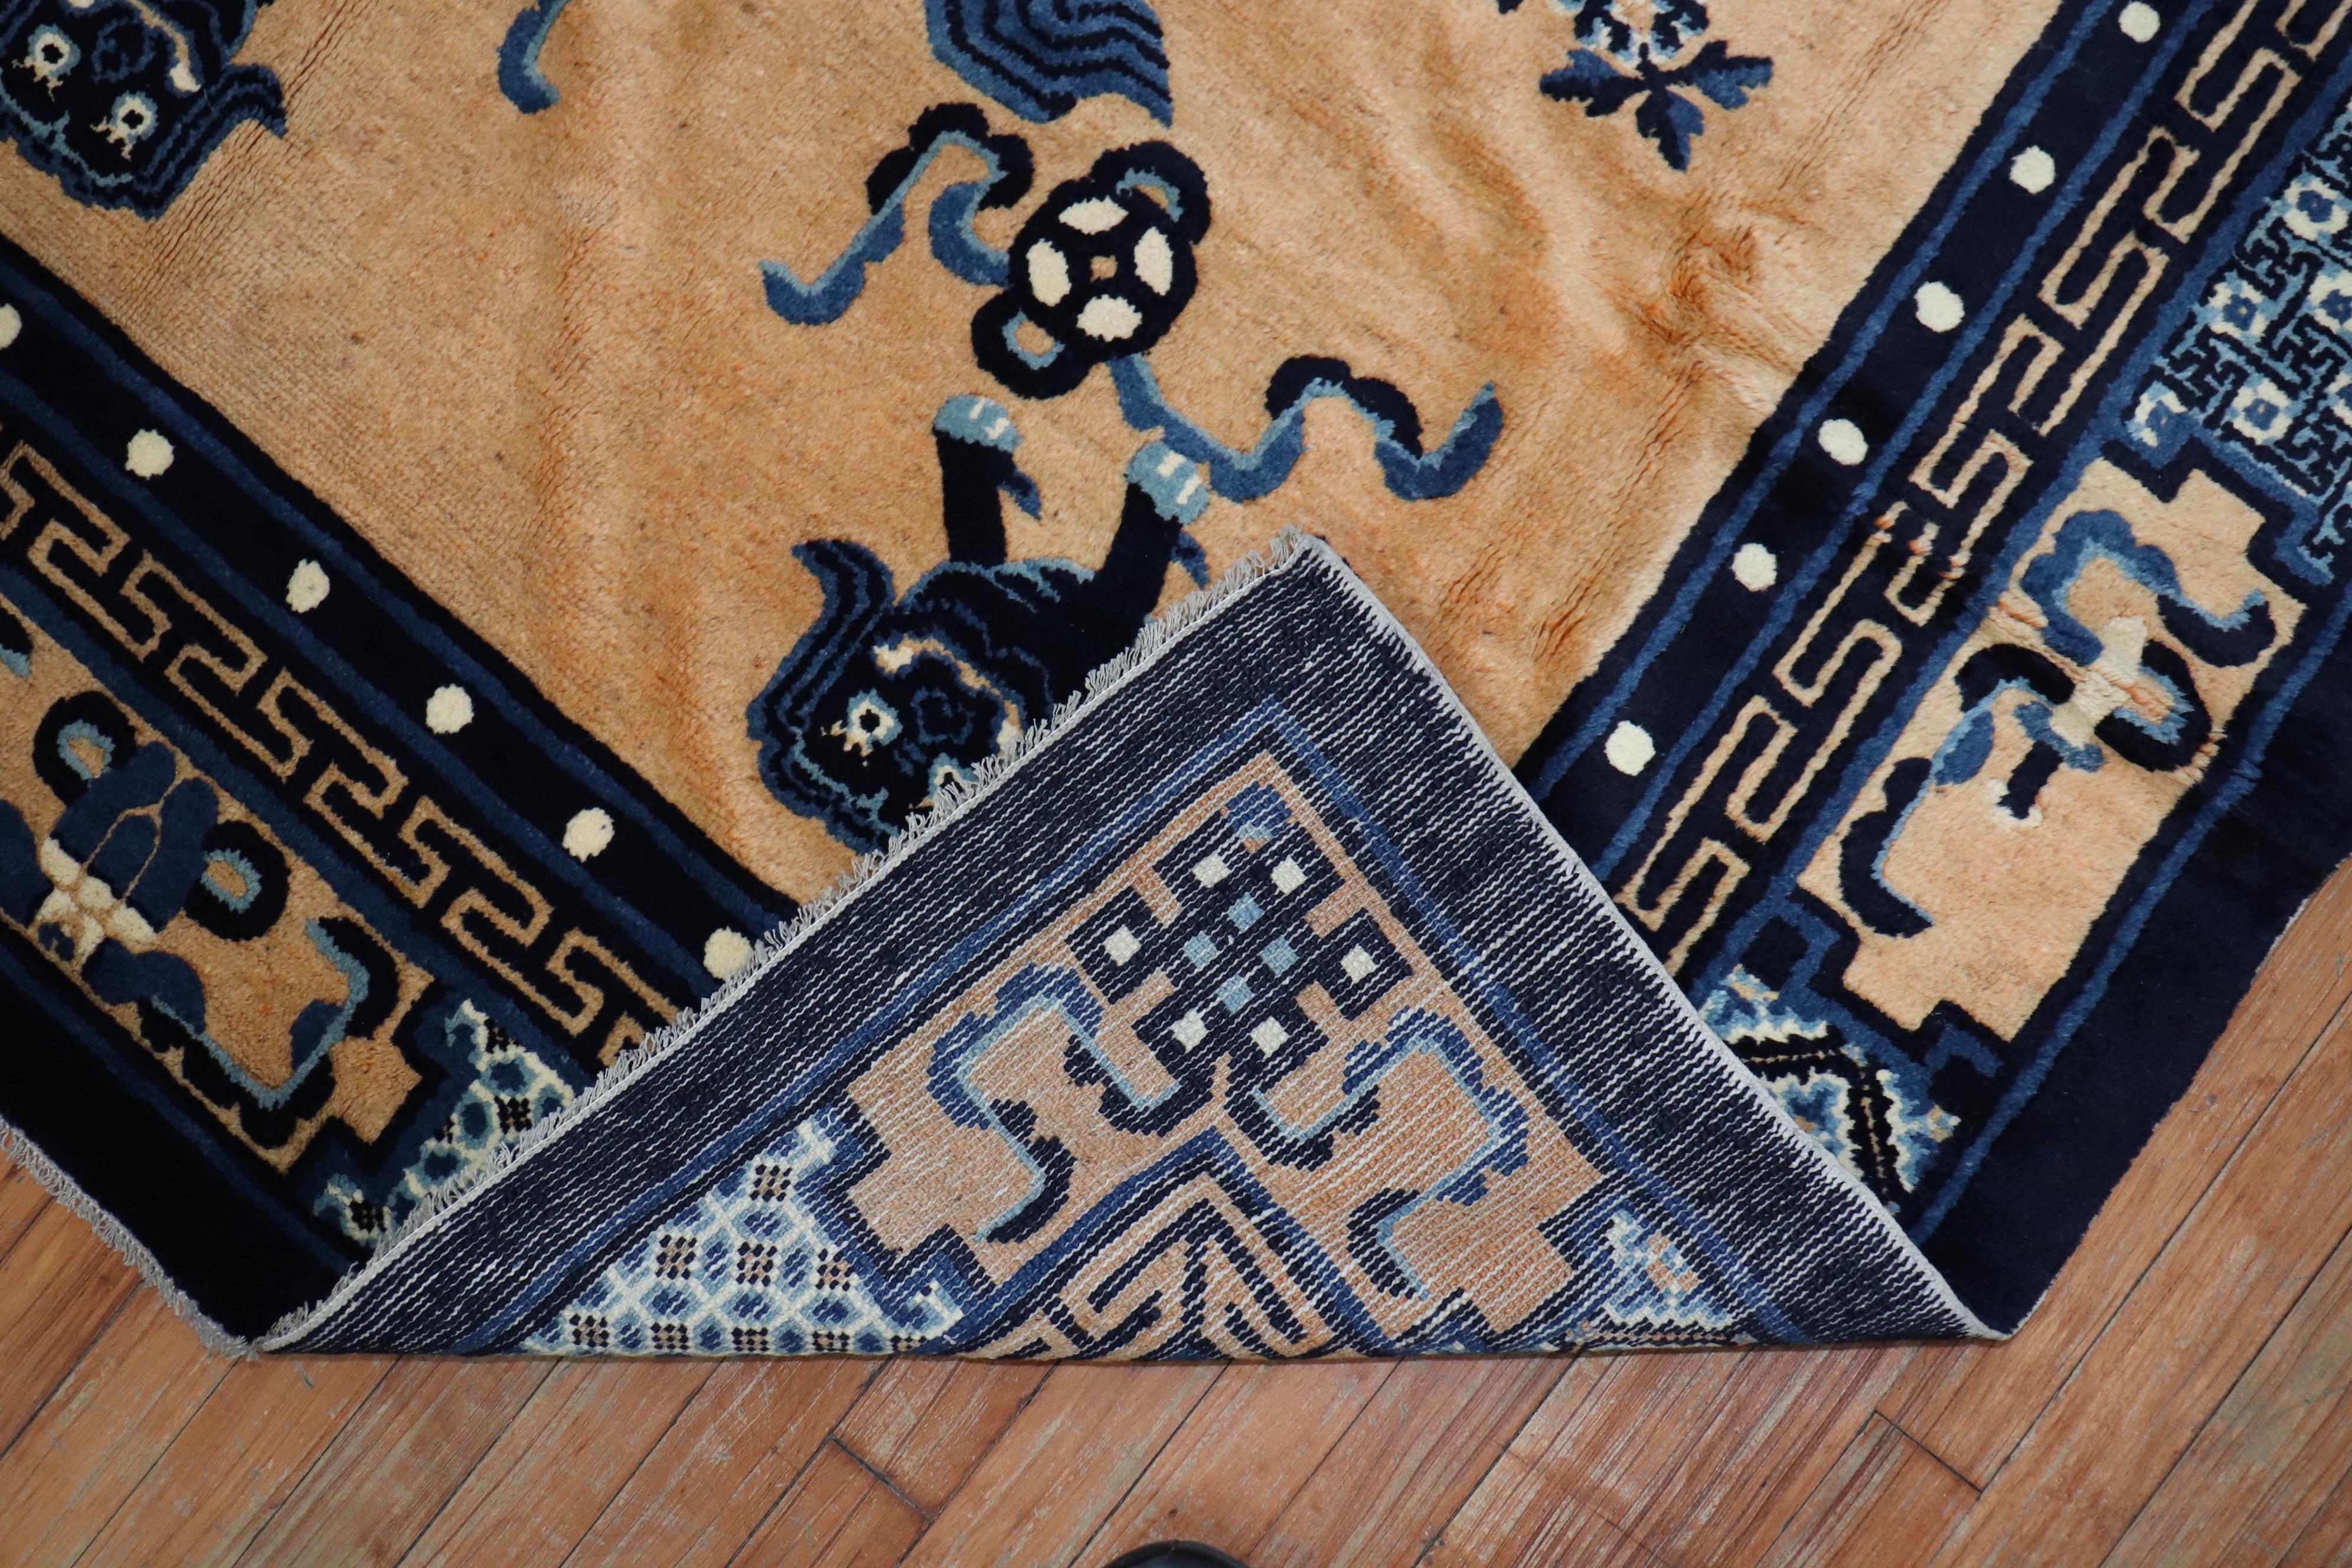 Beeindruckender chinesischer Teppich mit einem Motiv voller glücklicher Foo Dogs, um 1940. Das Feld ist pfirsichfarben, mit marineblauen und hellblauen Akzenten

Maße: 5'3